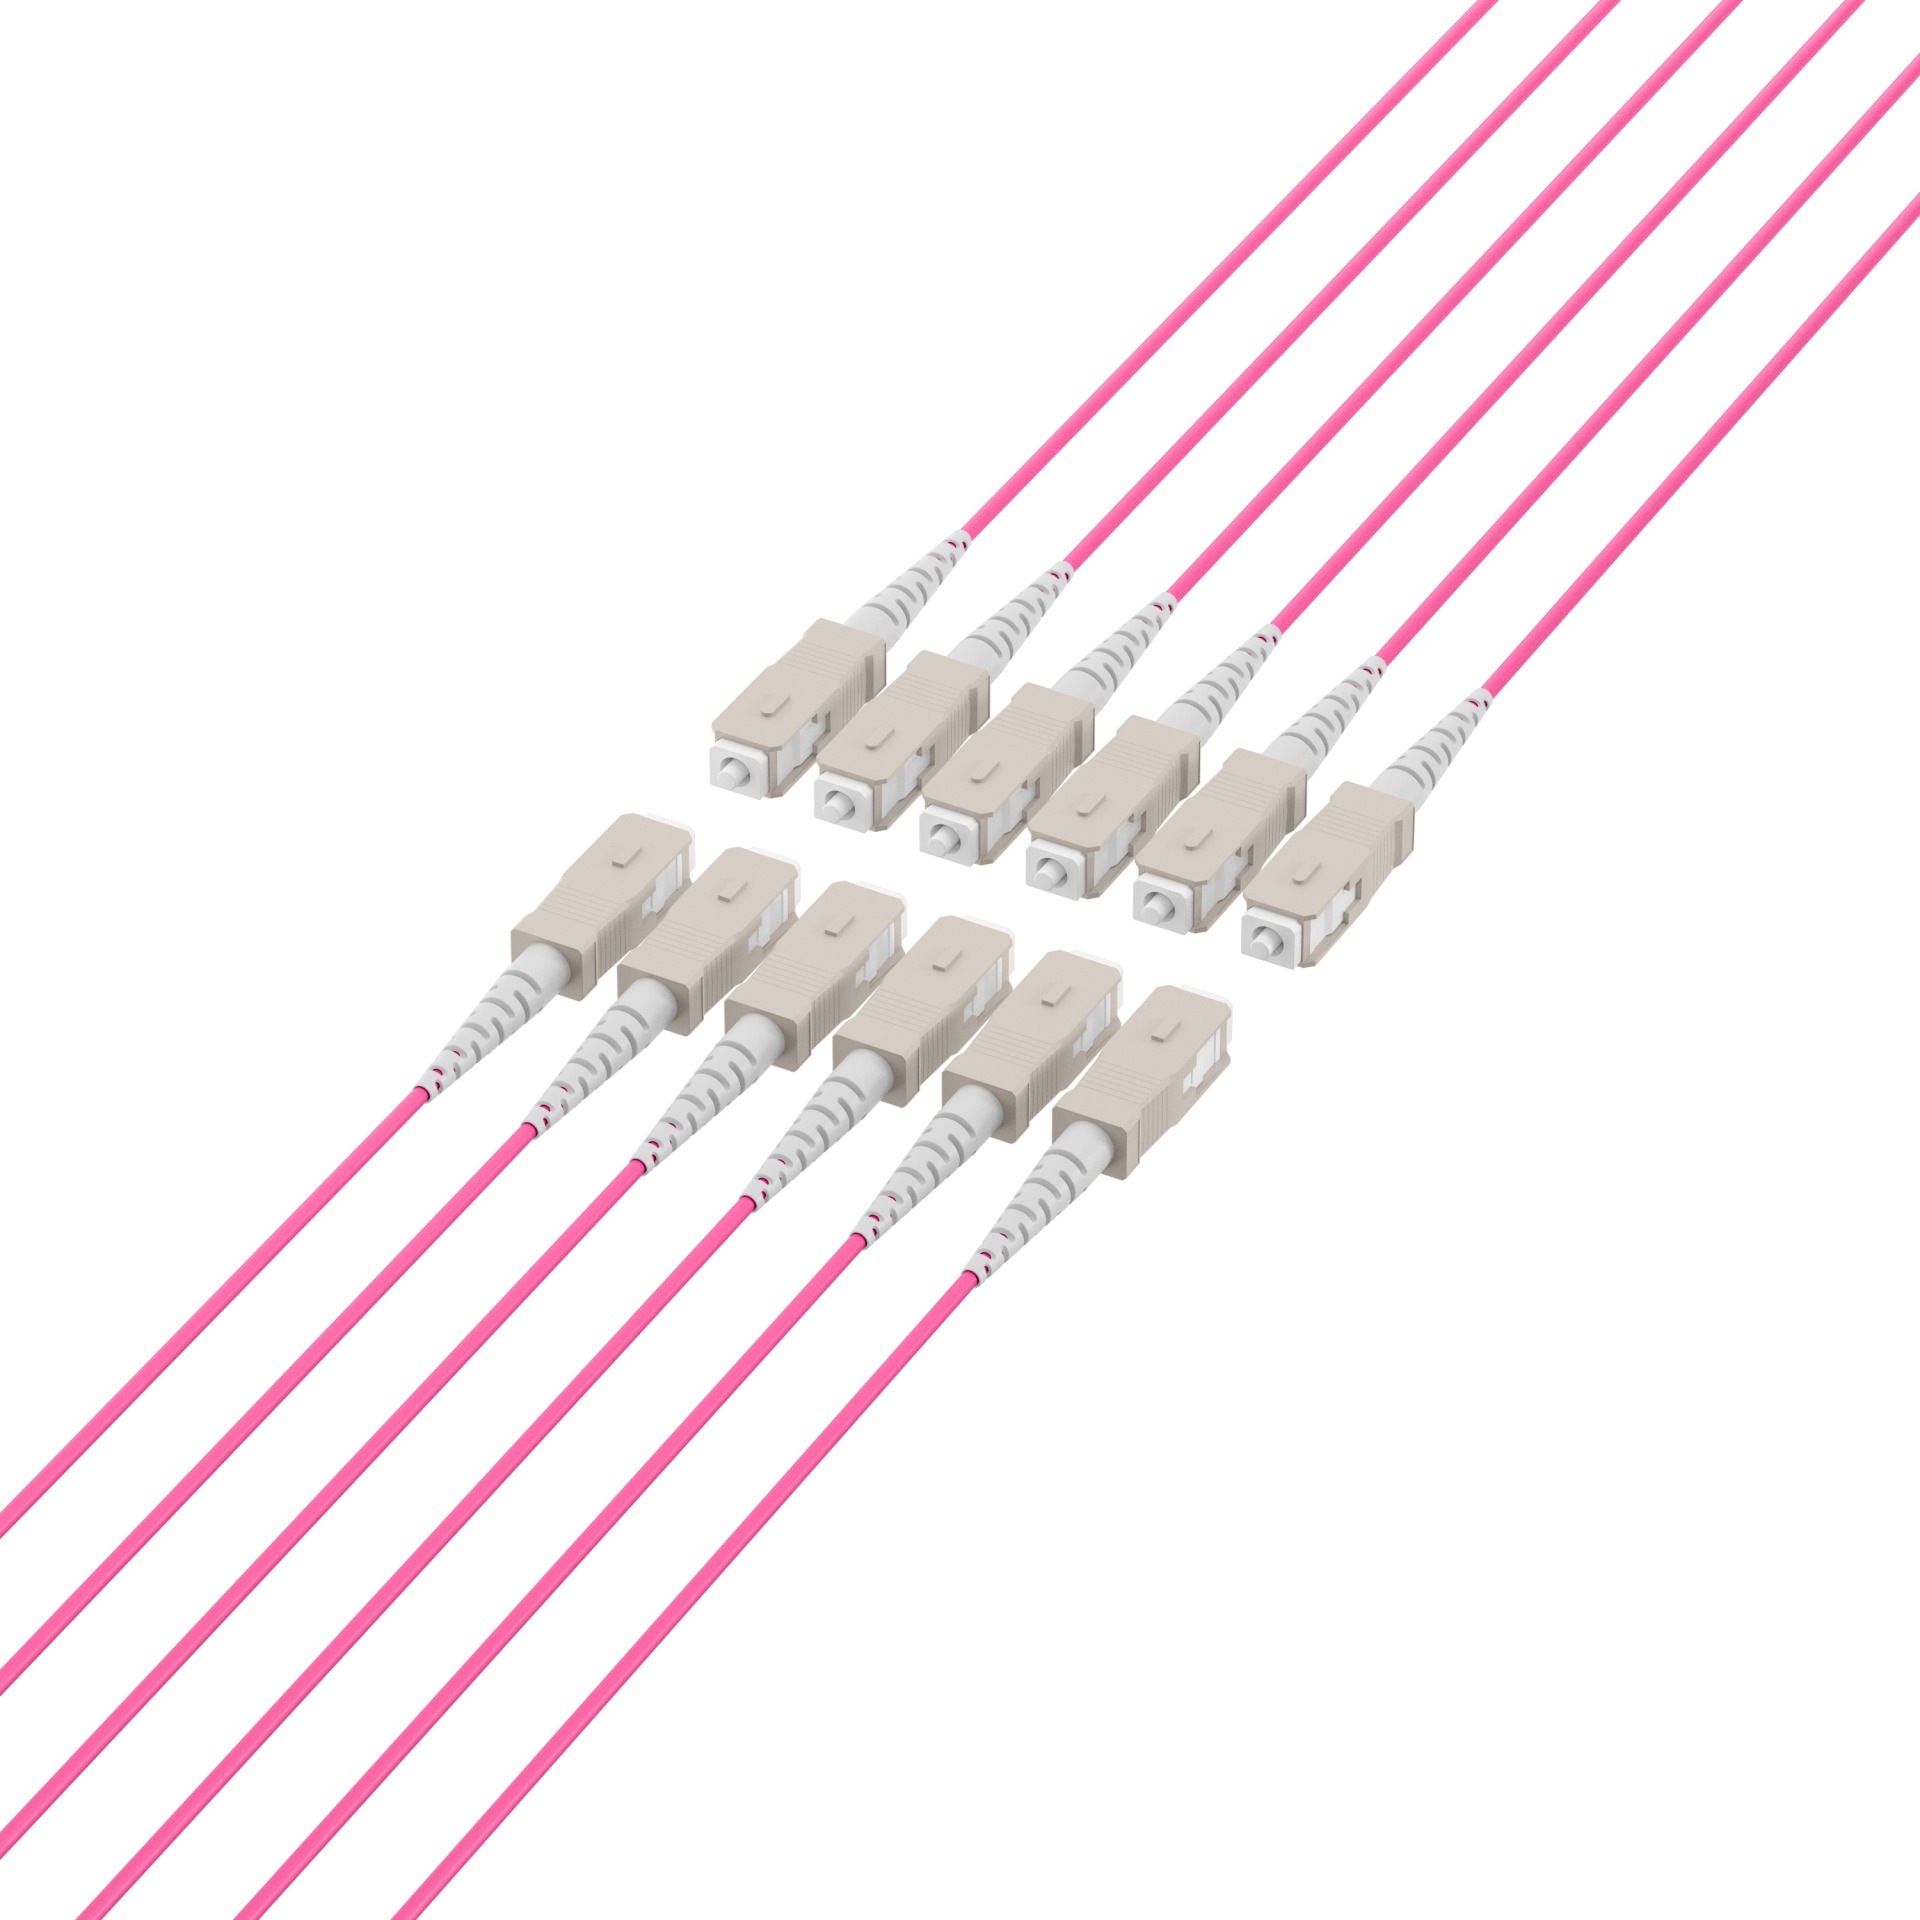 Trunk cable U-DQ(ZN)BH OM4 12G (1x12) SC-SC,90m Dca LSZH